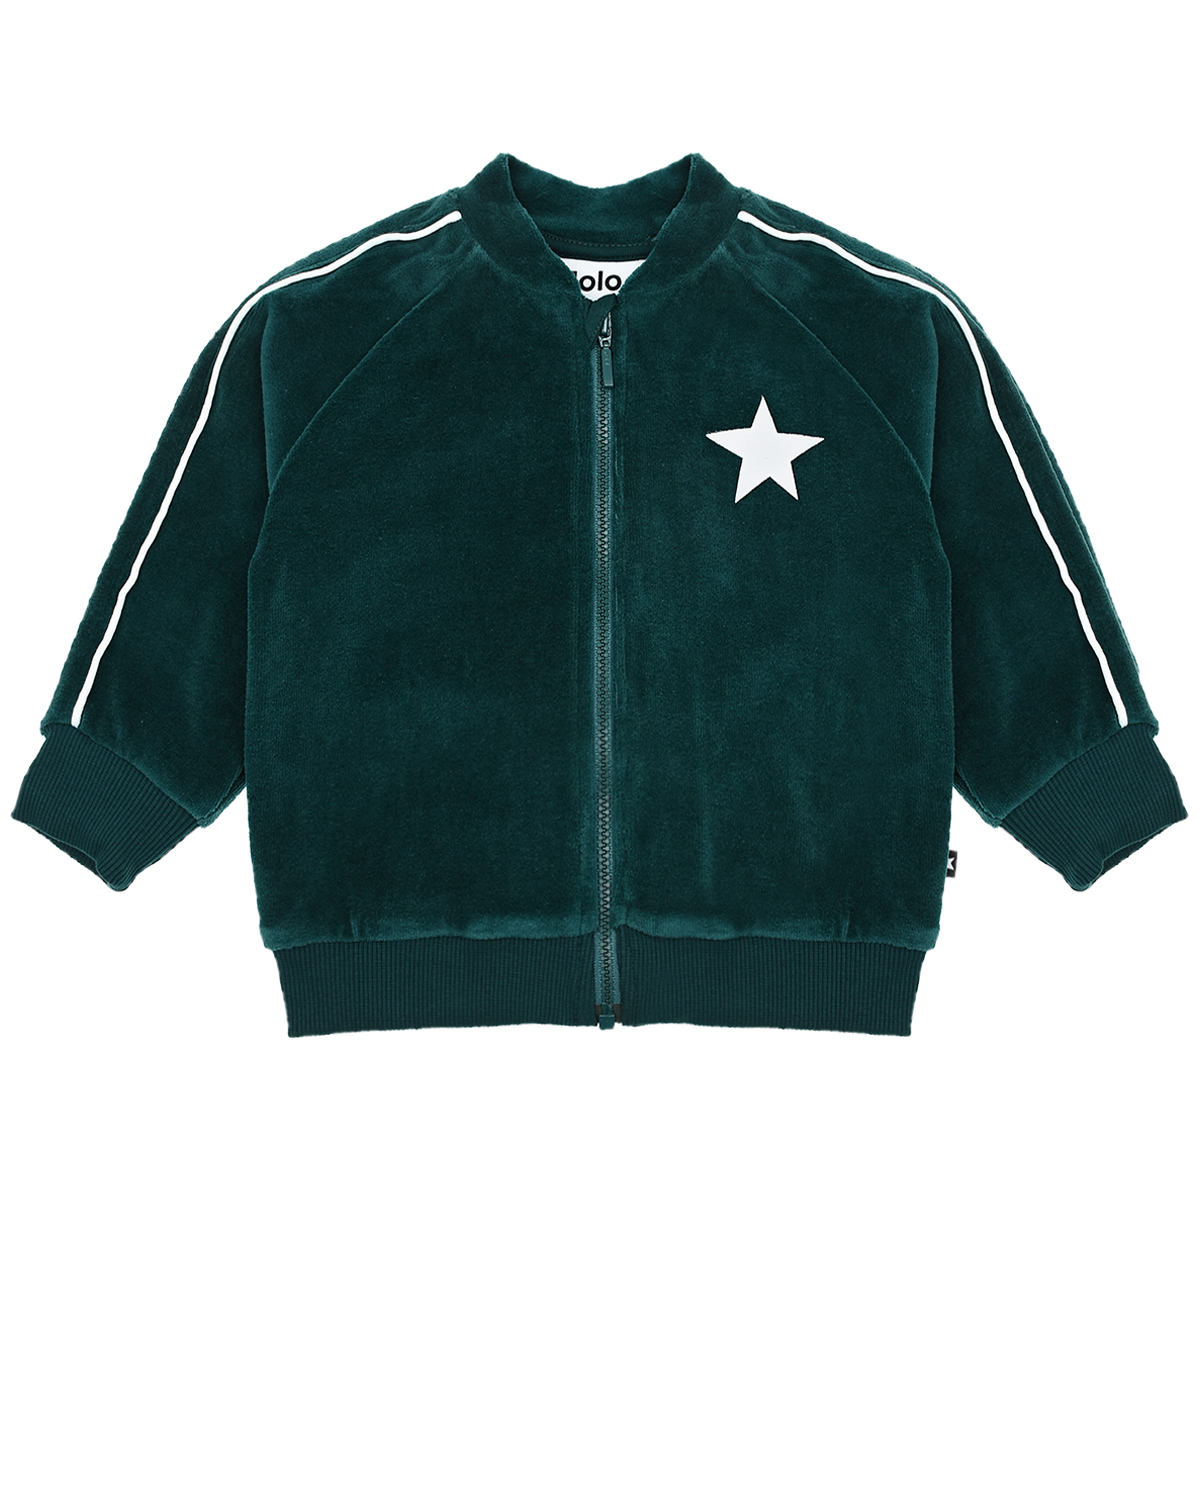 Зеленая спортивная куртка из велюра Molo детская, размер 80, цвет зеленый - фото 1